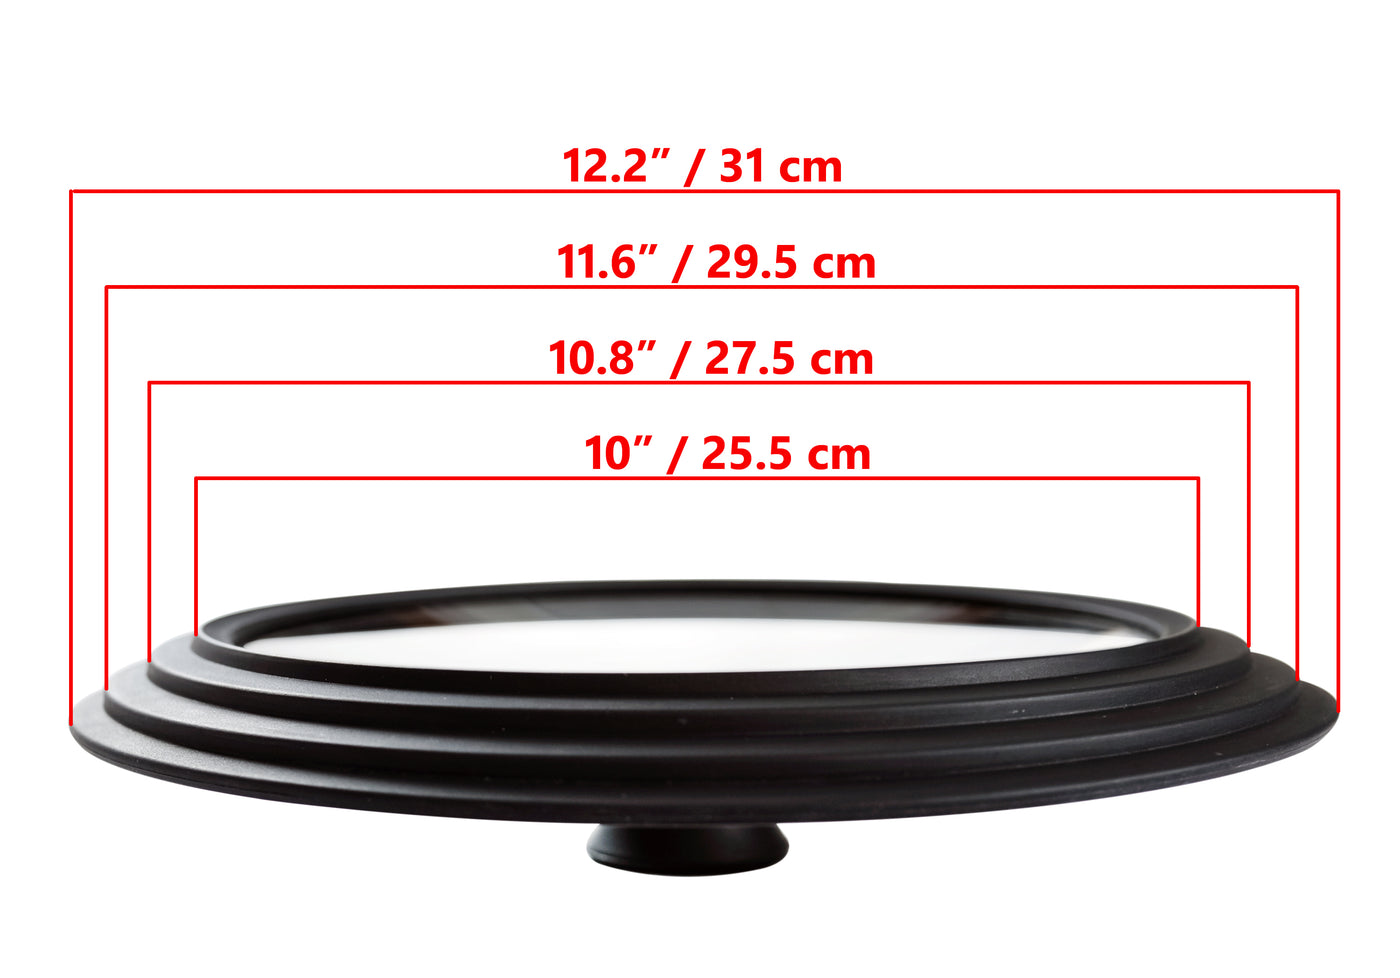 Glasslokk Universal - Multistørrelse, ytre kanter 12,2" / 31 cm diameter, for gryter og panner, svart